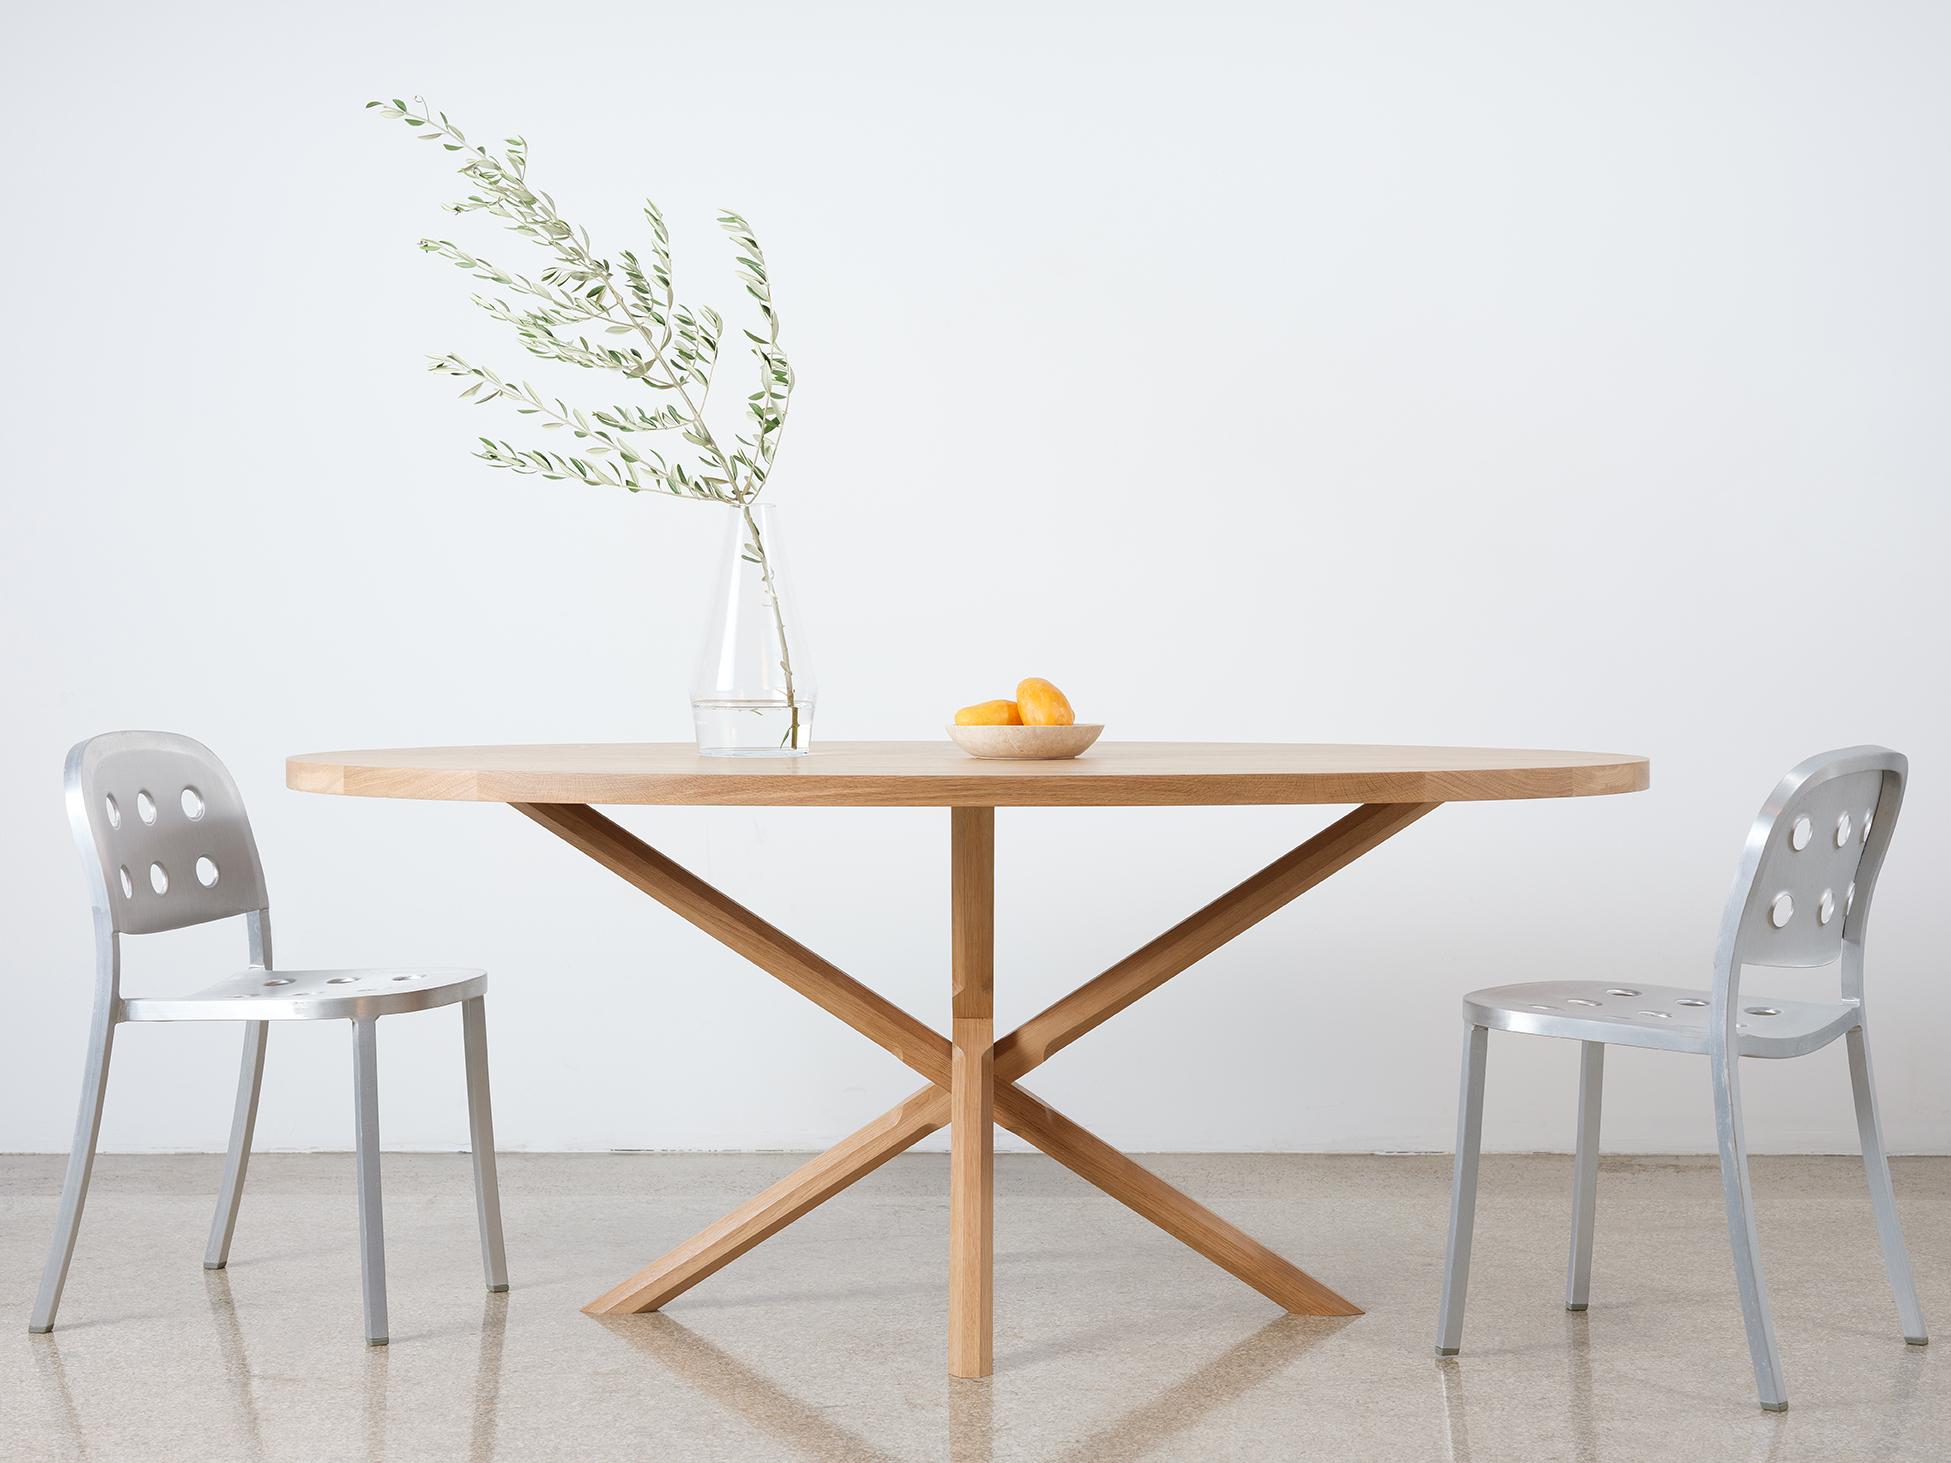 Ce guéridon ovale compact et moderne est construit entièrement en bois dur. Le plateau épais de la table repose sur une base en forme de X avec des pieds polygonaux sculptés de manière complexe. Les pieds sont composés de deux éléments distincts, ce